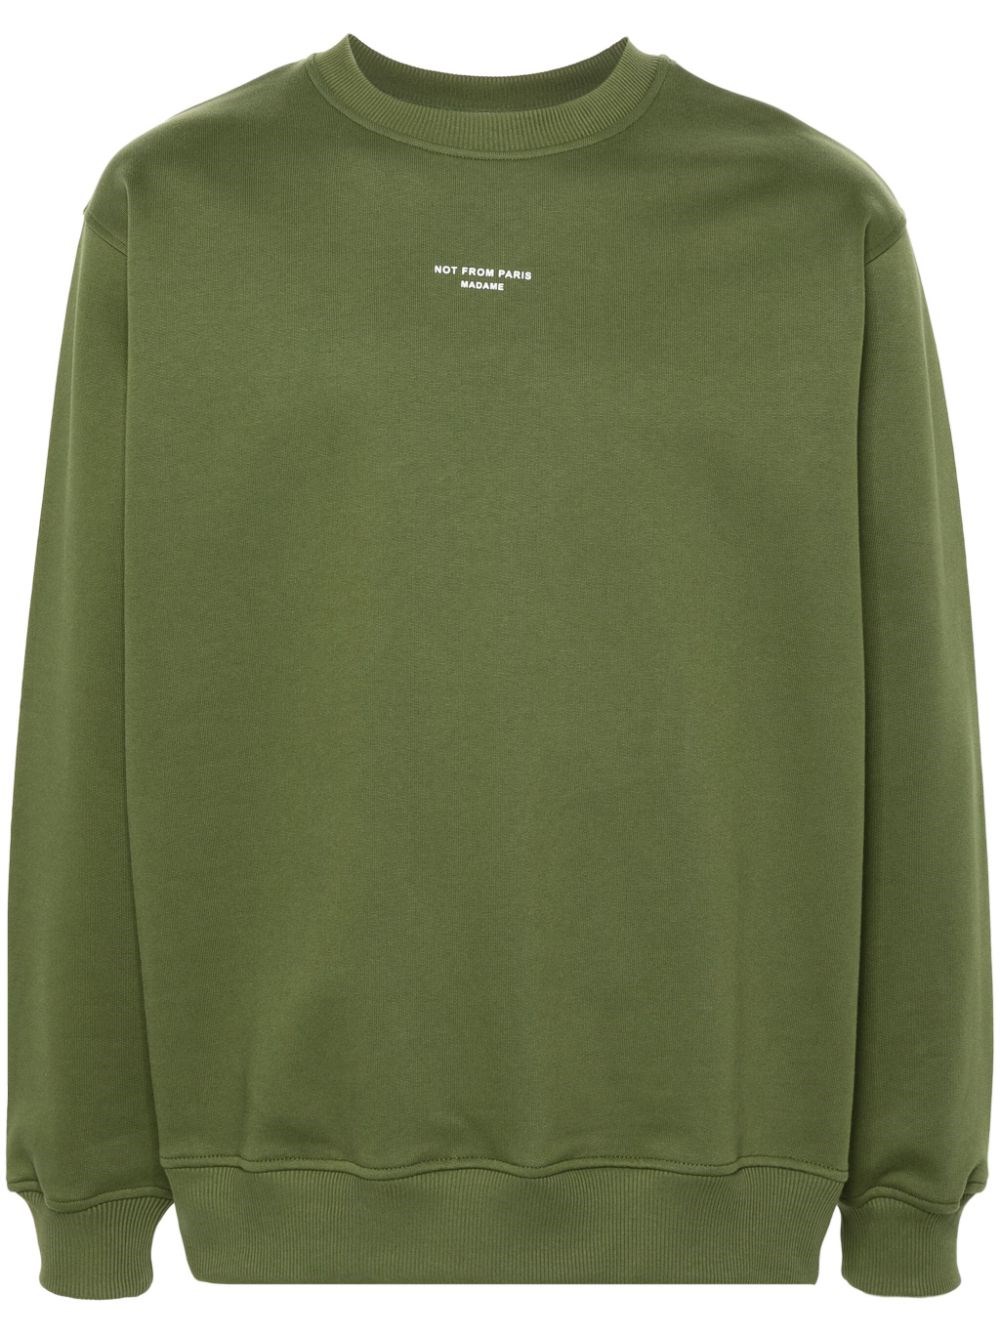 Shop Drôle De Monsieur Top Le Sweatshirt Slogan Classique In Green